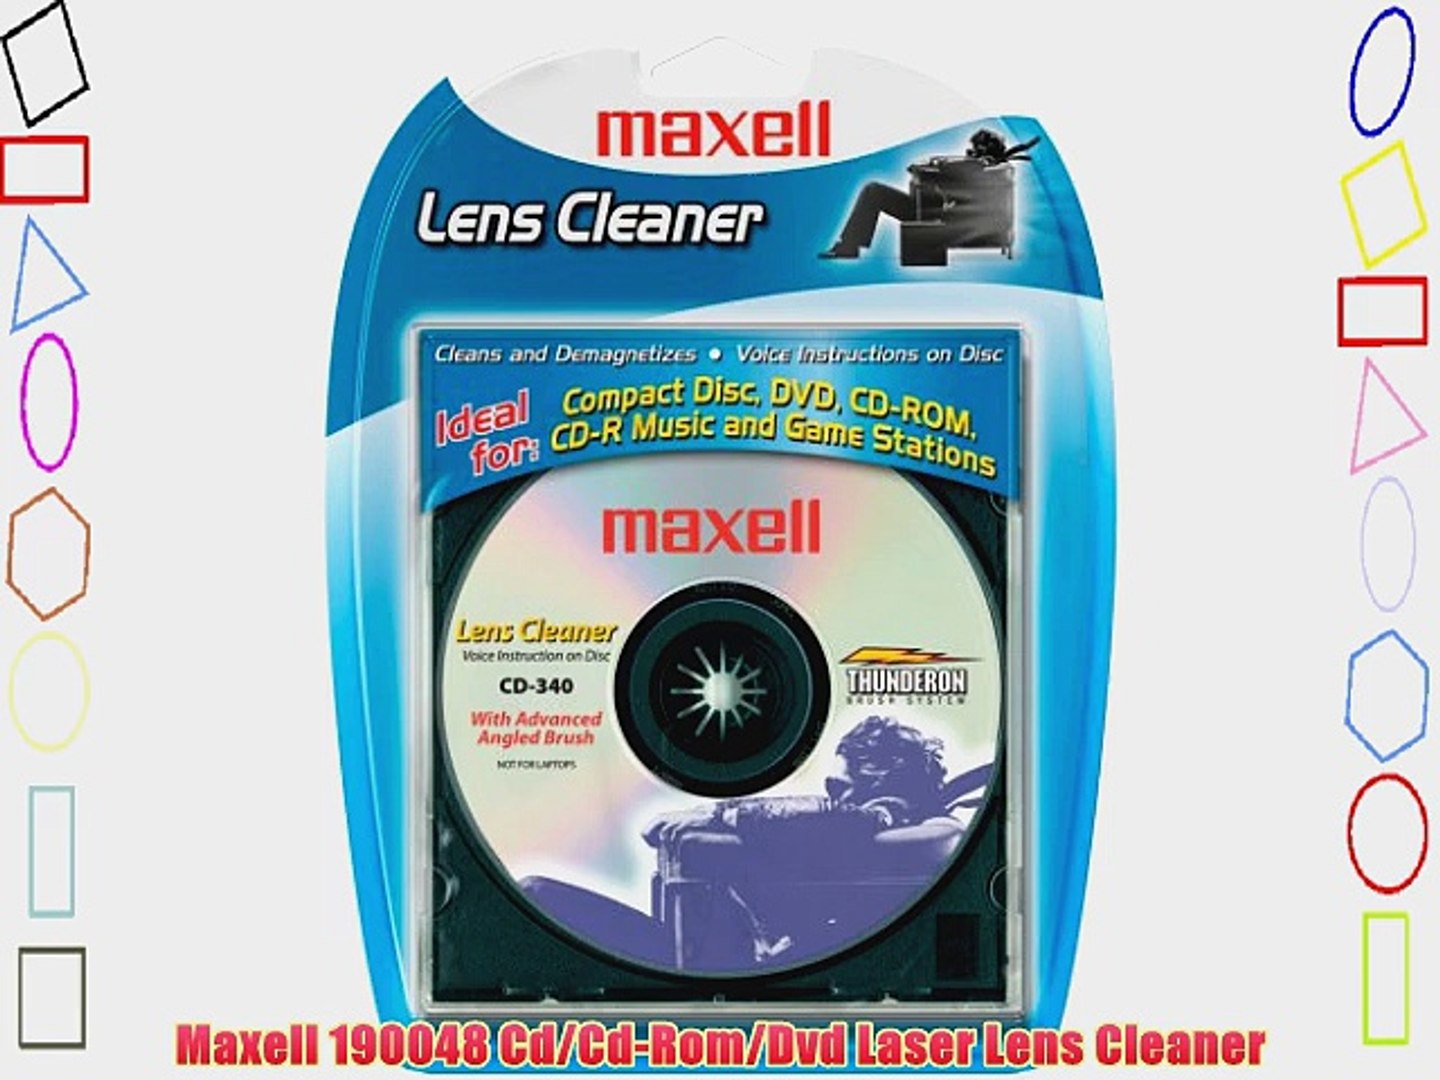 Maxell 190048 Cd/Cd-Rom/Dvd Laser Lens Cleaner - video Dailymotion